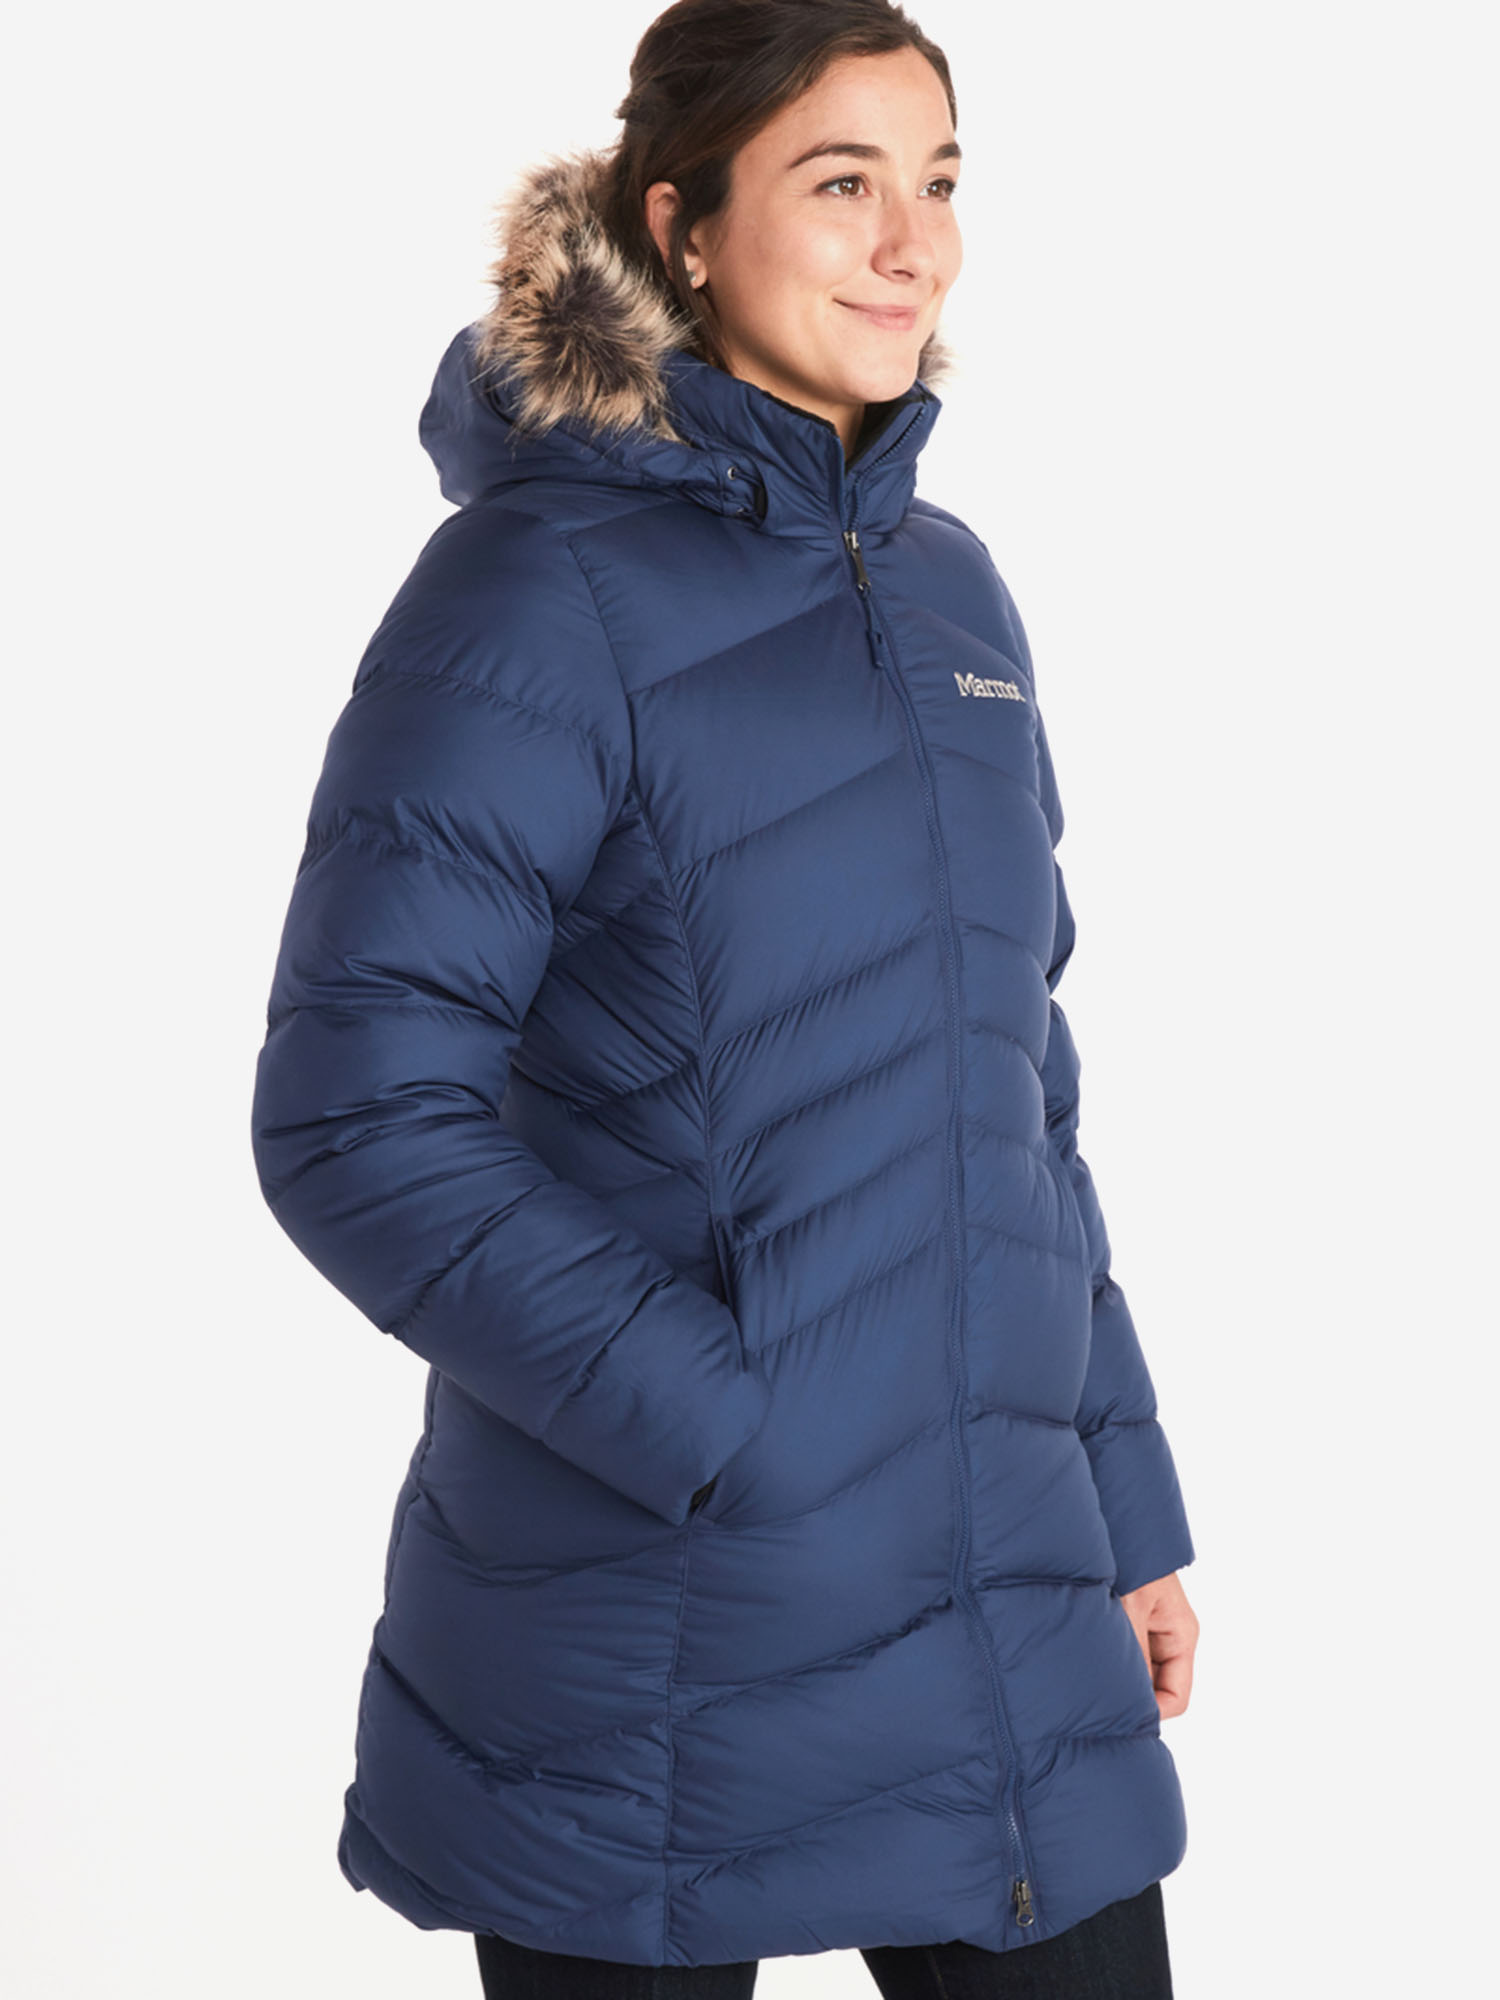 Пальто женское Marmot Montreal Coat, Синий пальто женское marmot montreal coat